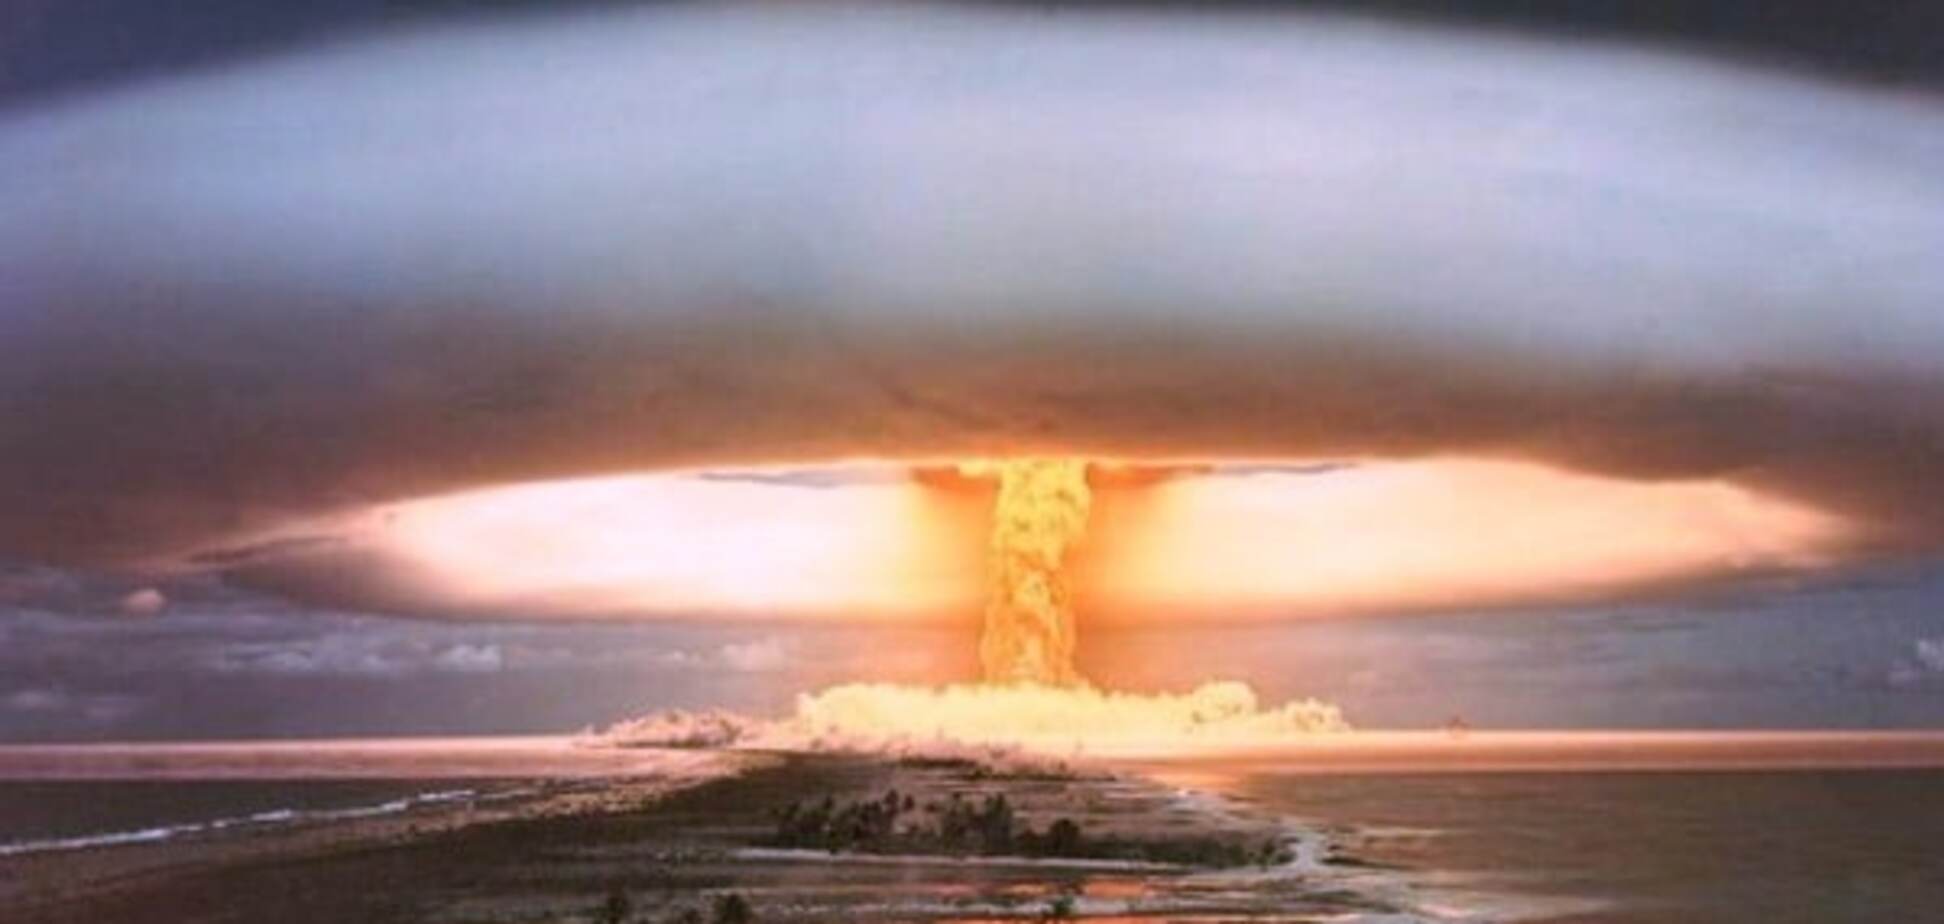 Ким Чен Ын испытал водородную бомбу: в КНДР произошло сильное землетрясение